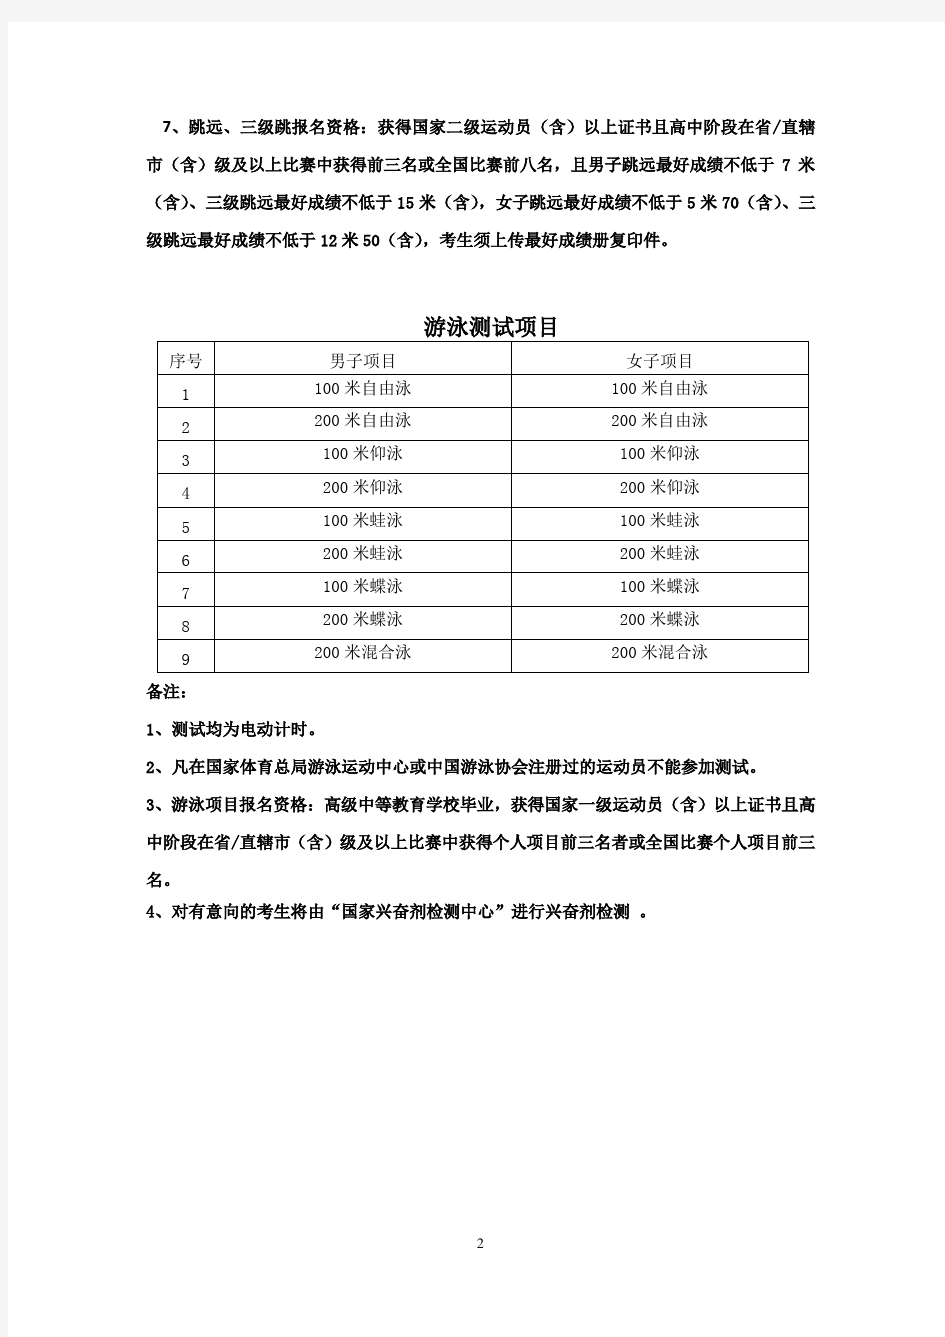 北京大学2018年高水平运动队各项目测试内容及要求